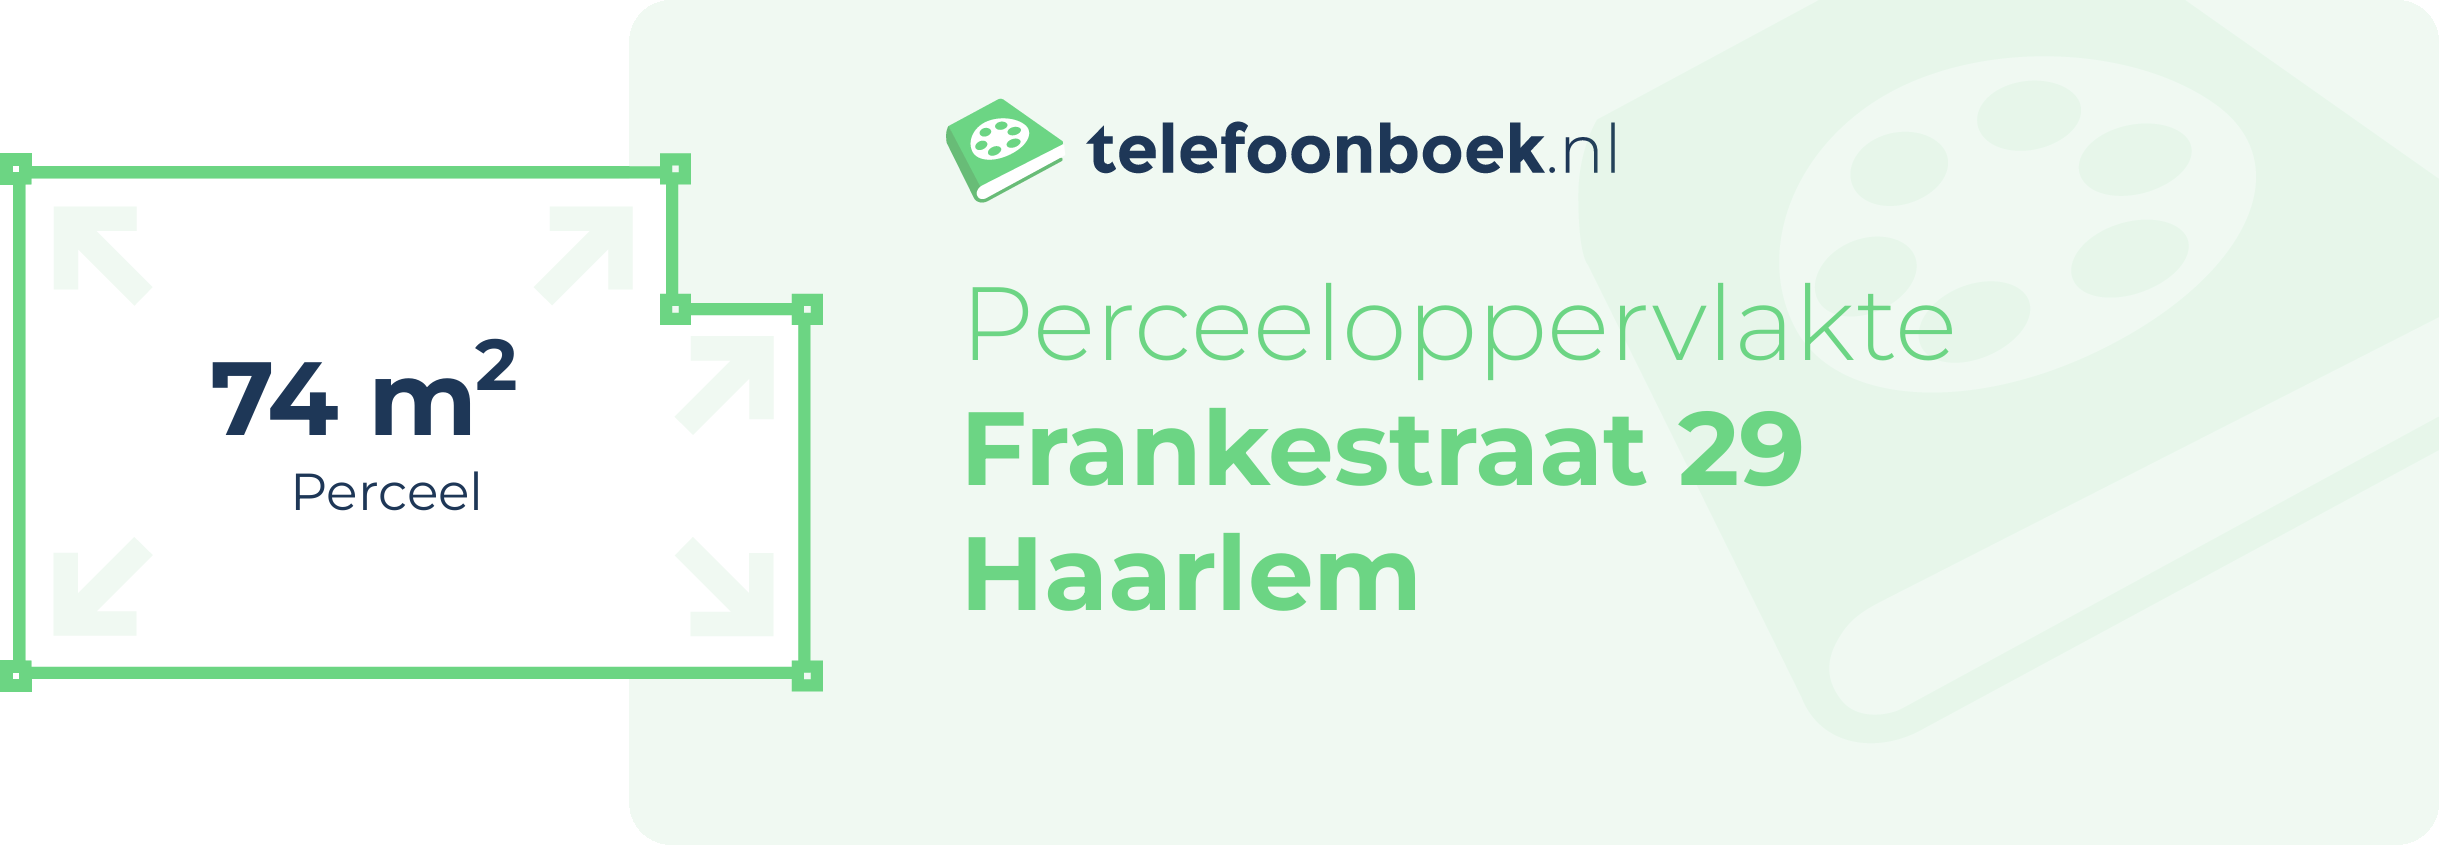 Perceeloppervlakte Frankestraat 29 Haarlem